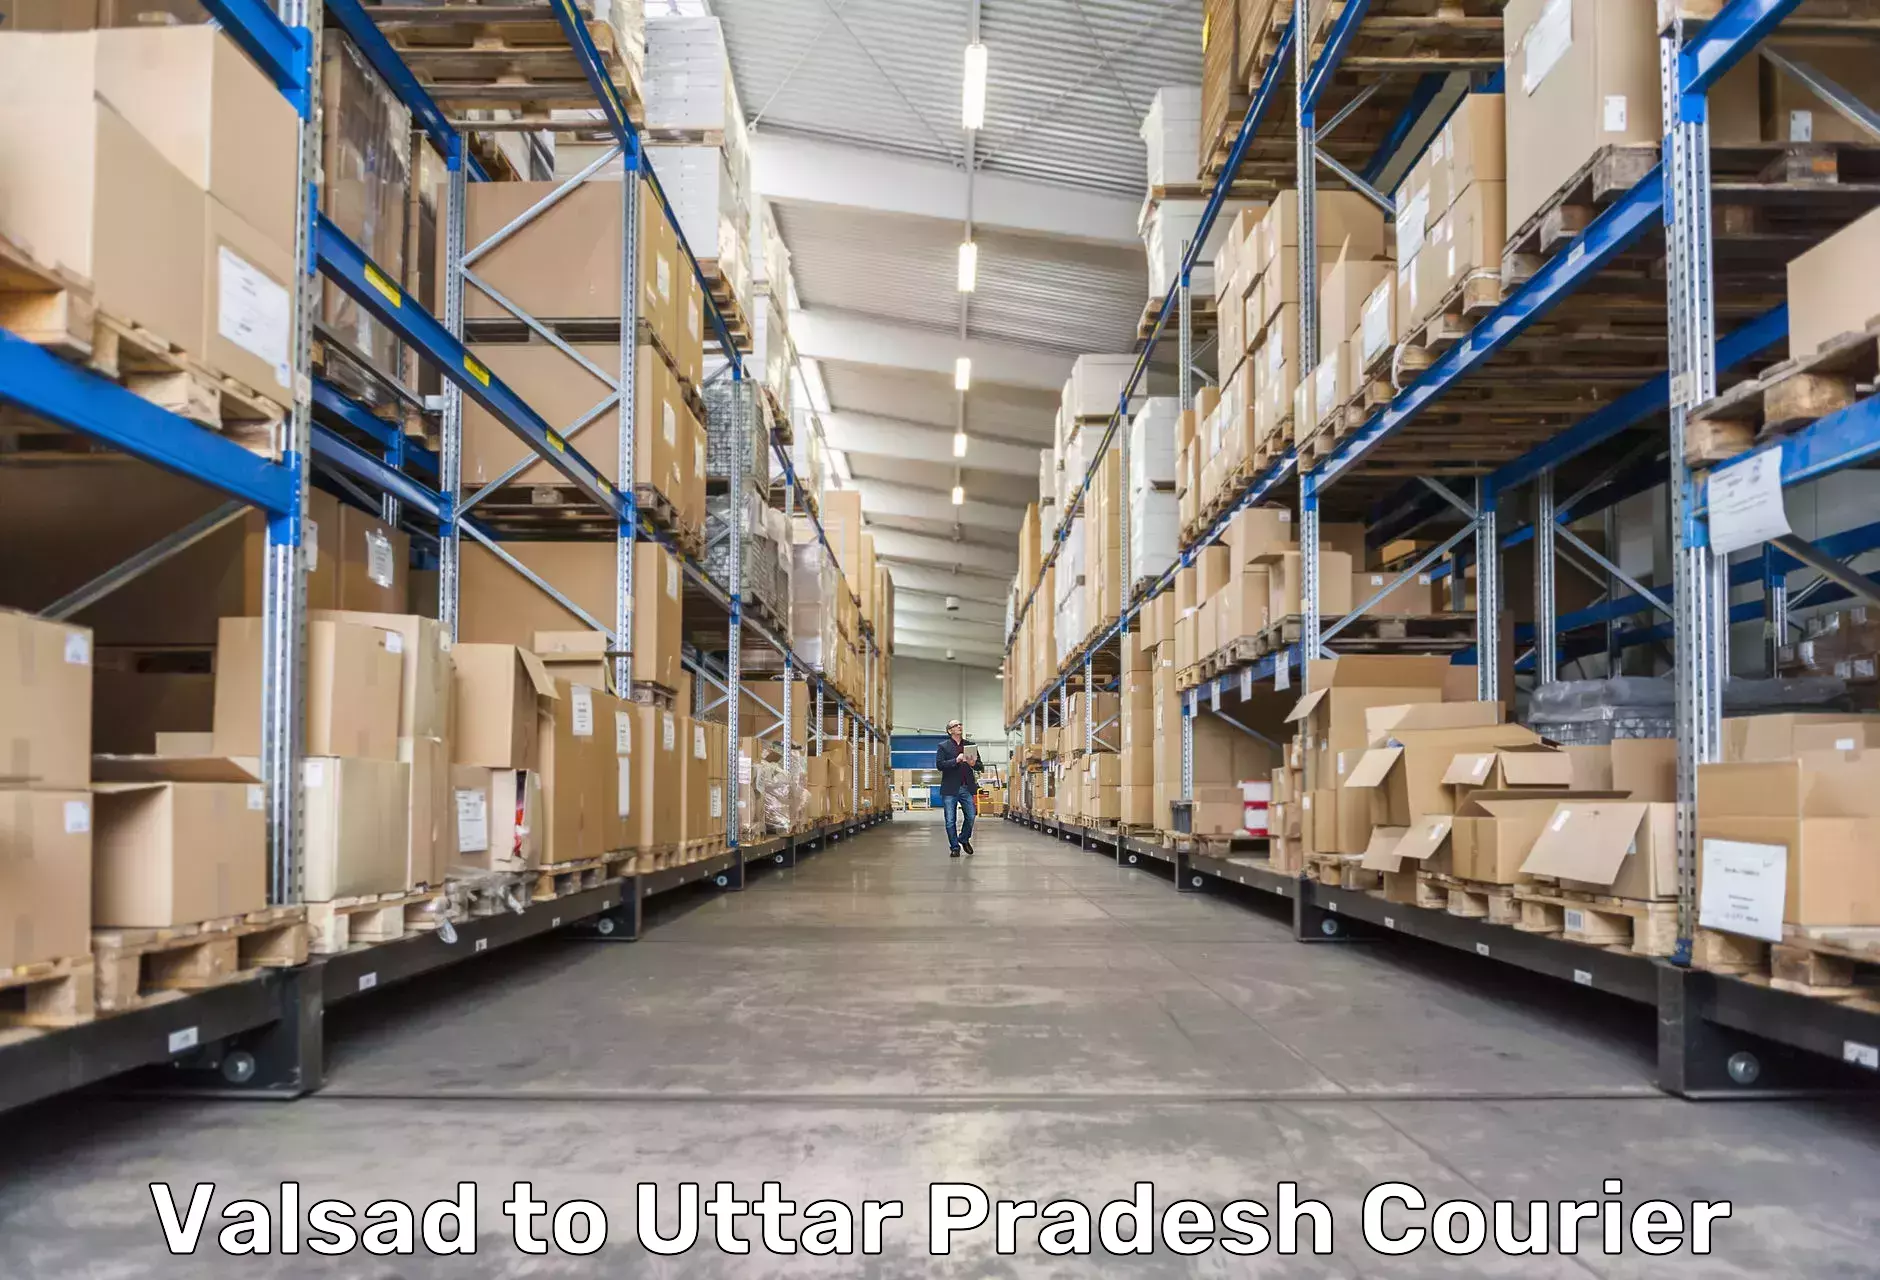 Fast-track shipping solutions Valsad to Uttar Pradesh